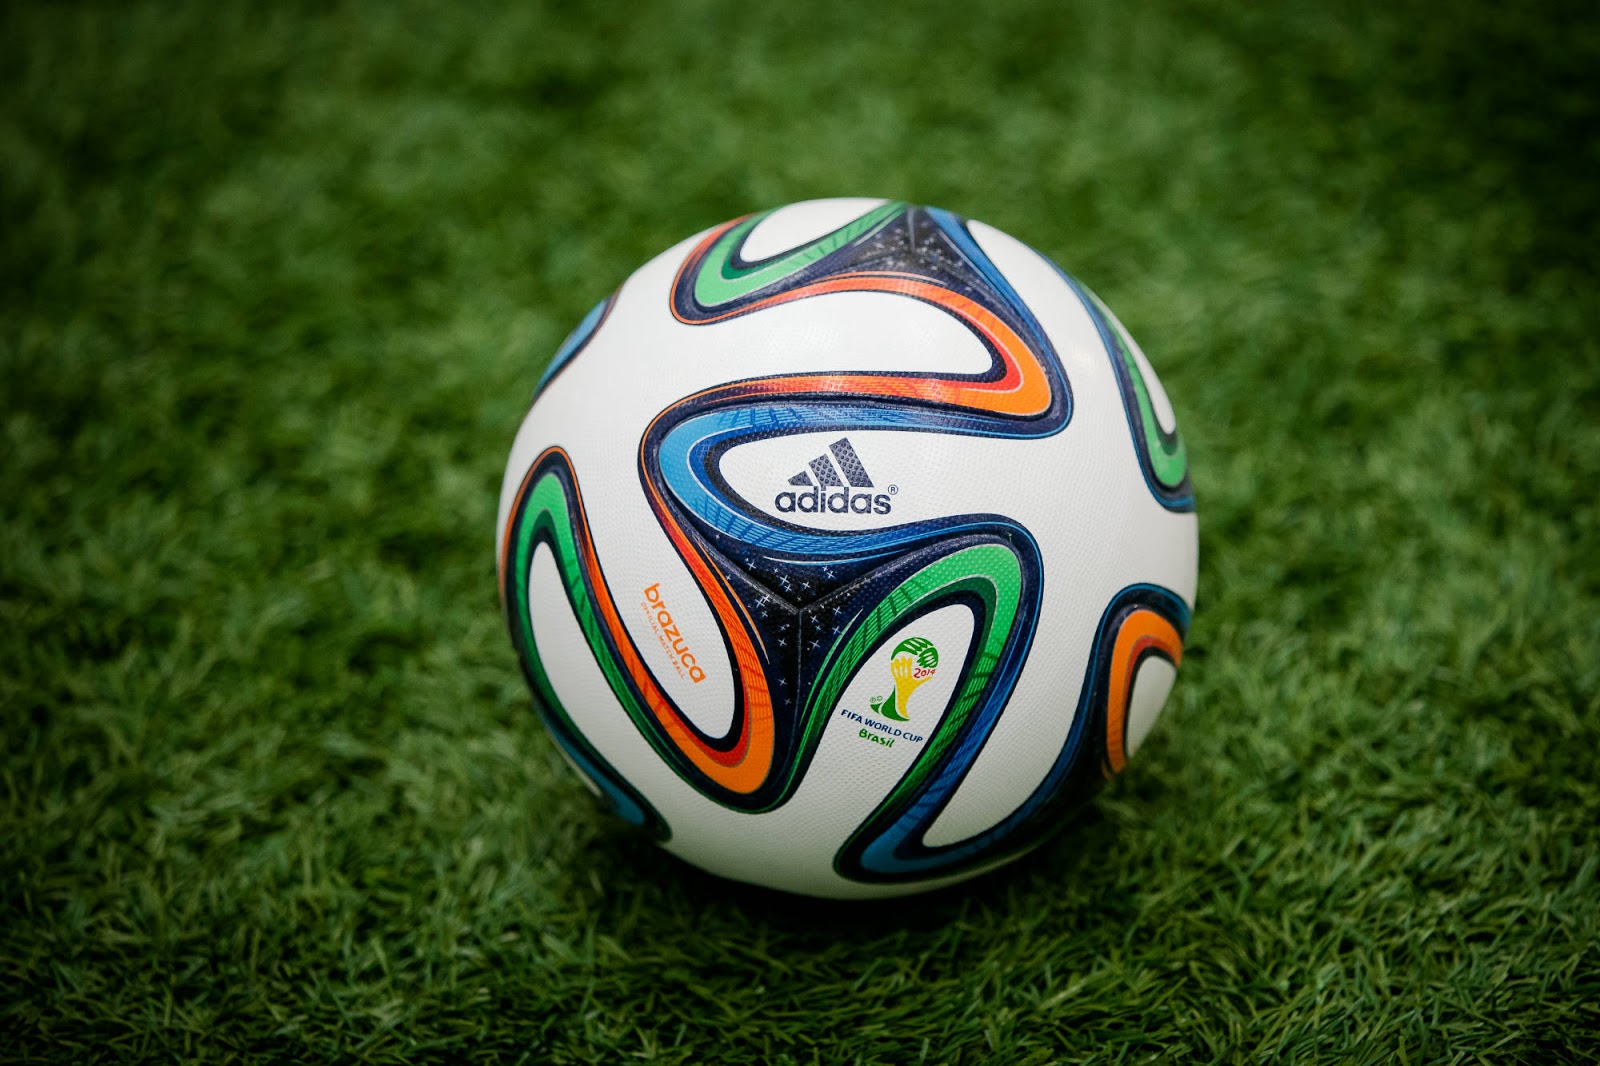 Adidas Brazuca WM Ball veröffentlicht + spezielle Version für das